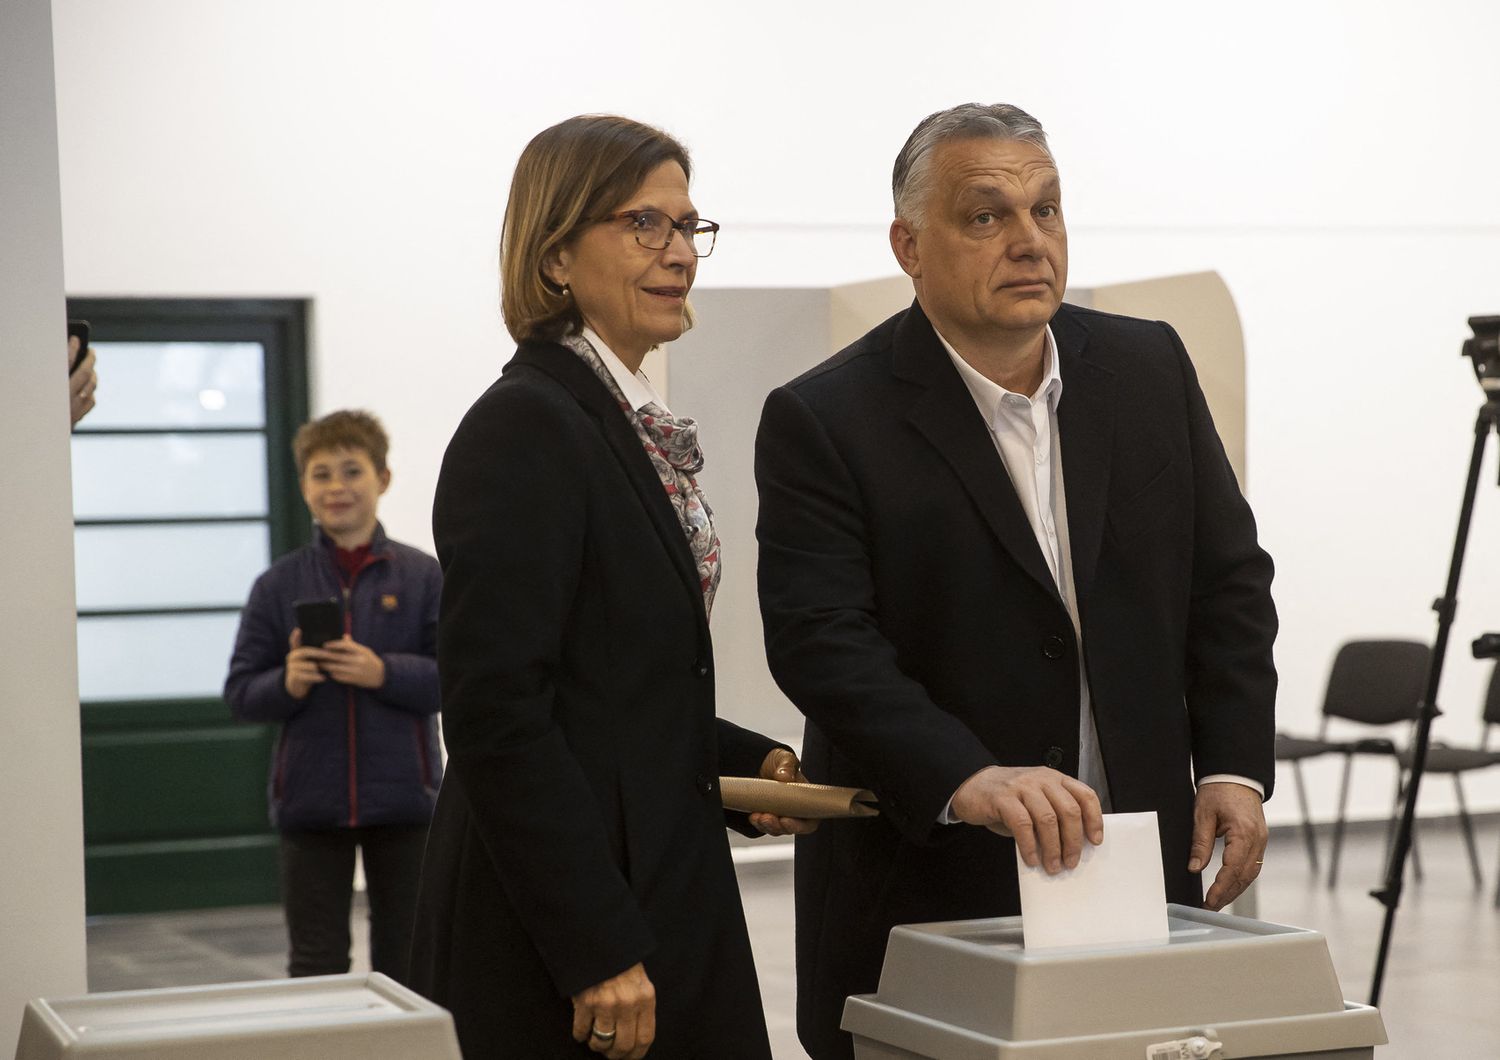 Viktor Orban con la moglie